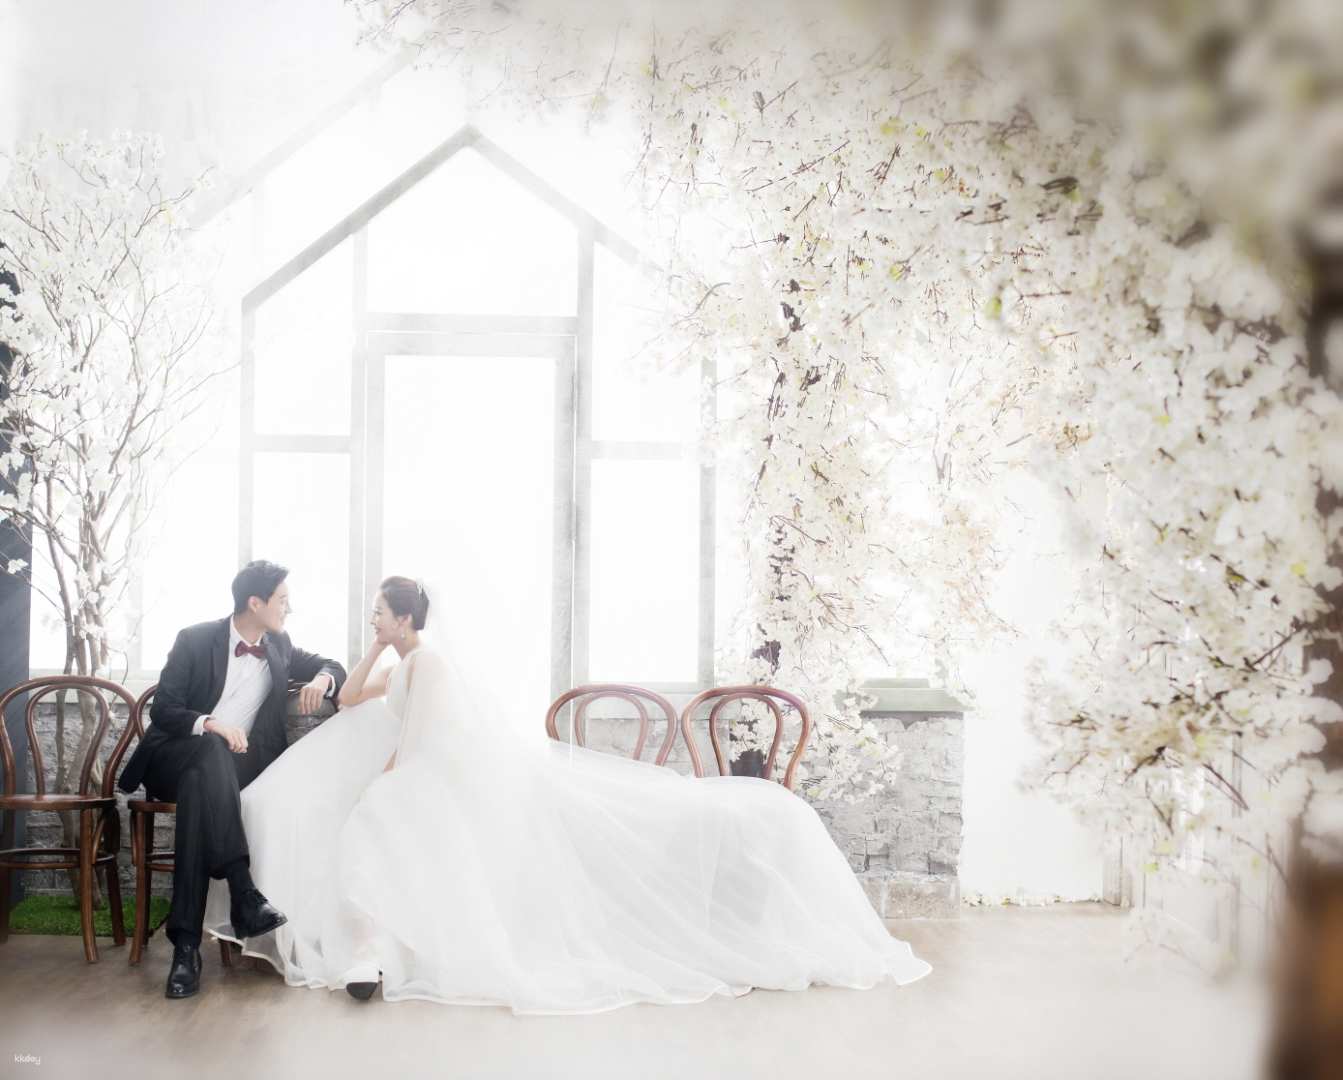 韓國-首爾吉安得Z-and專業攝影| 韓式浪漫頂級婚紗攝影